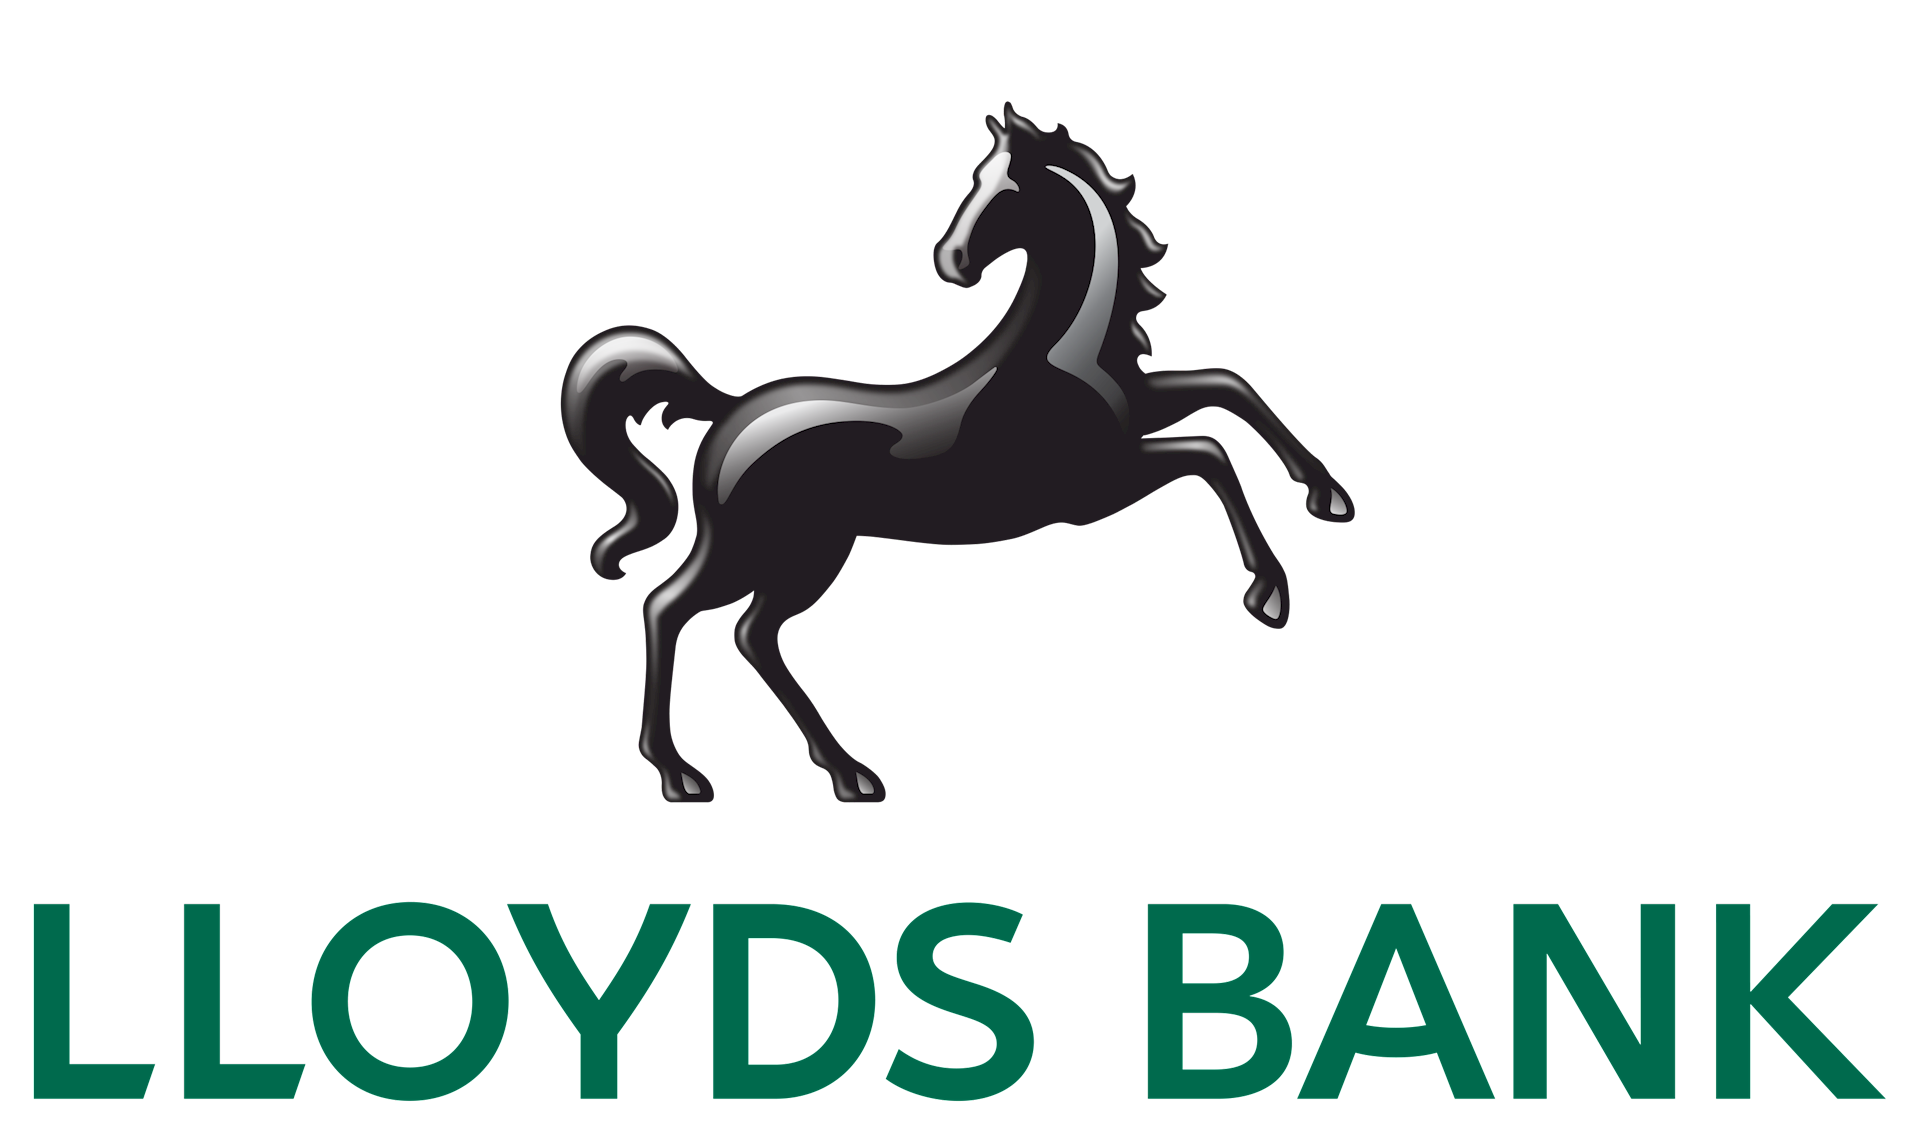 Strategic Sponsor - Lloyds